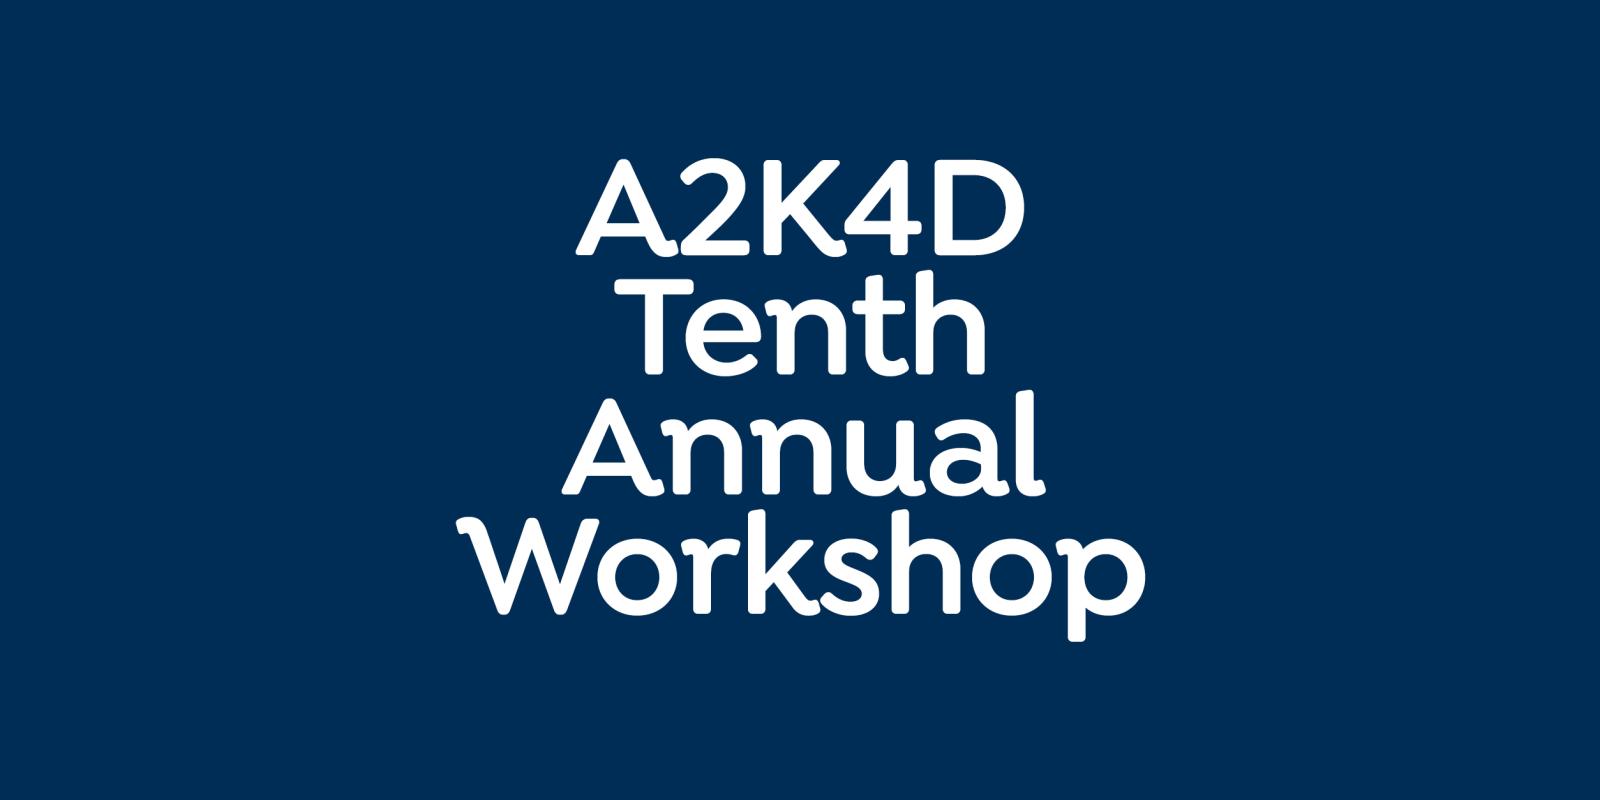 A2K4D 10th Annual Workshop